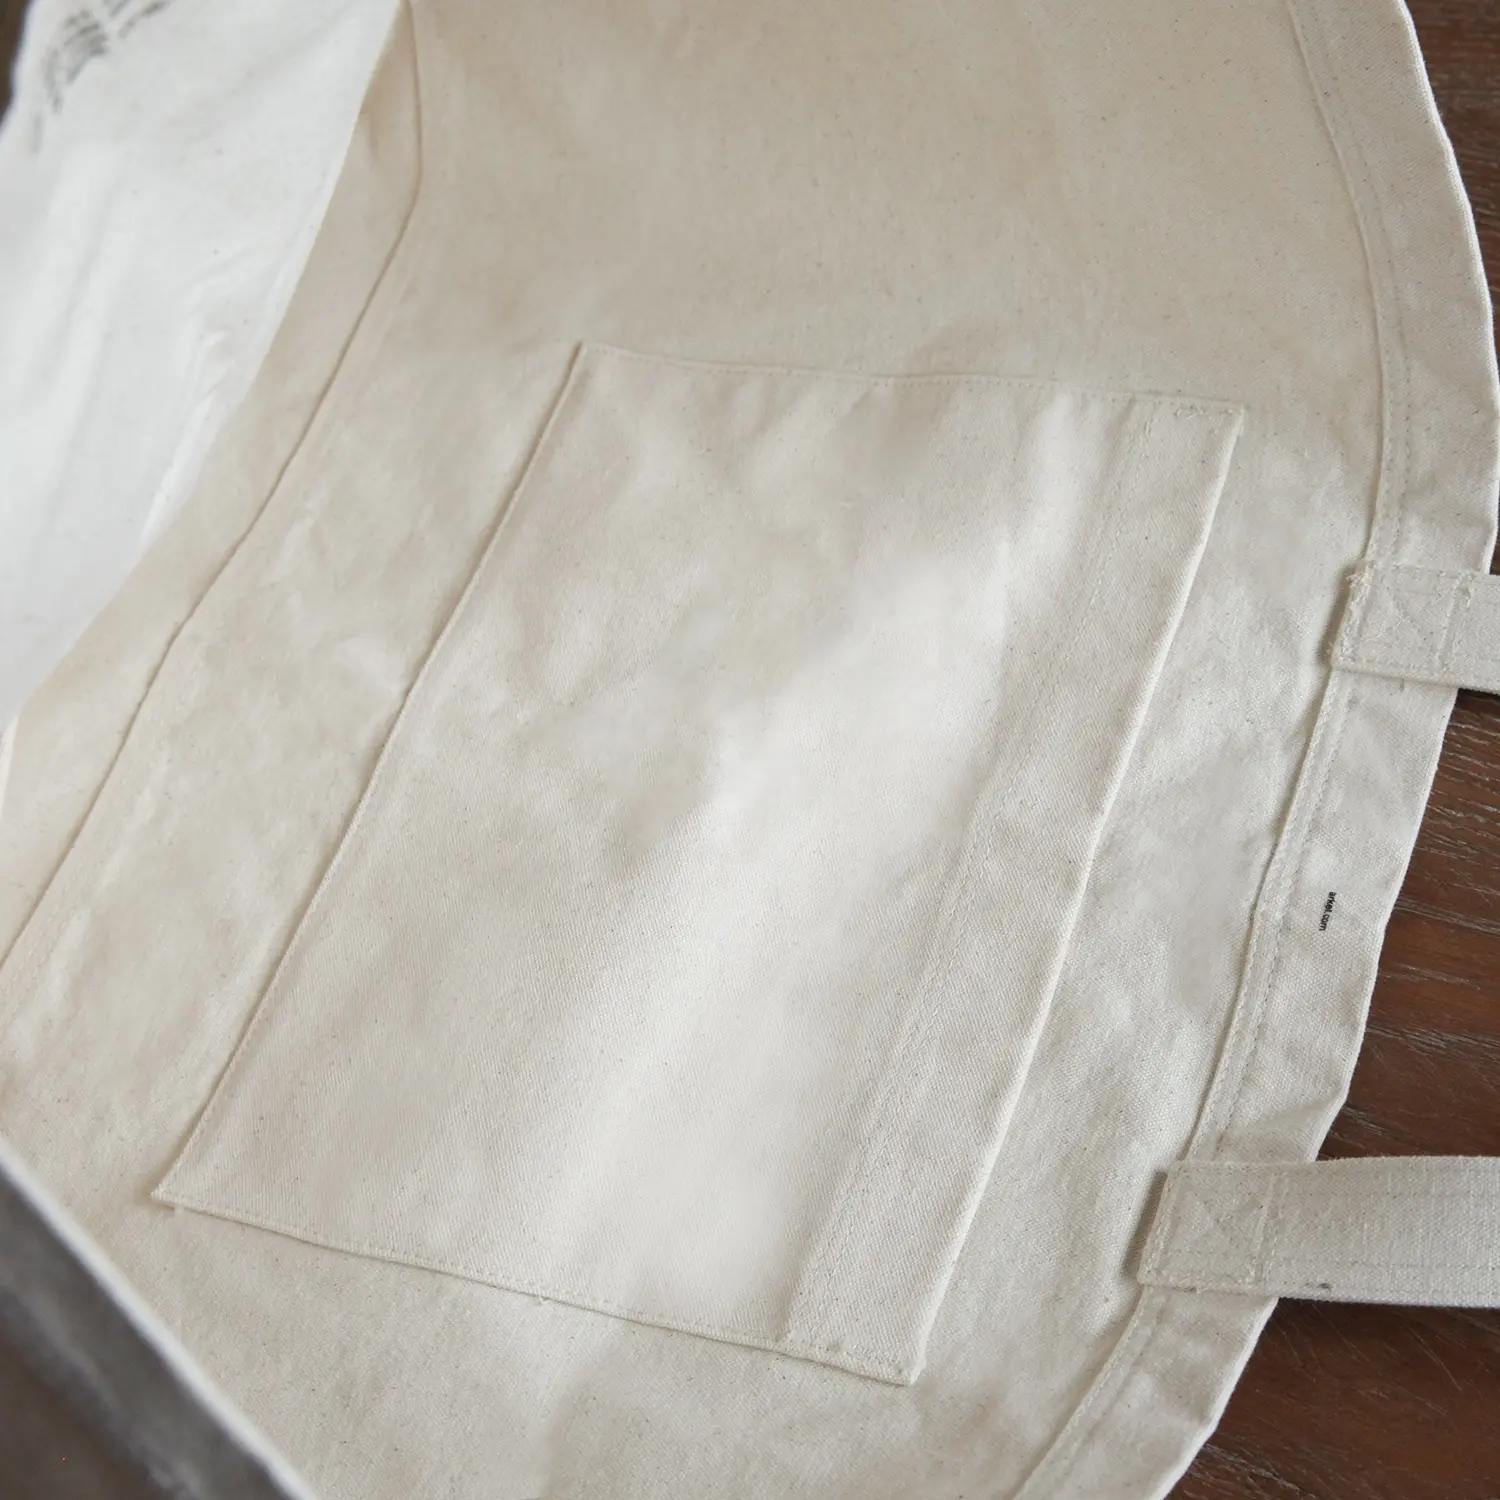 ถุงผ้าคอตตอนช้อปปิ้งผ้าคอตตอน,กระเป๋าขนาดใหญ่พิเศษผ้าใบหนาใหญ่พิเศษพับเก็บได้ตามต้องการ